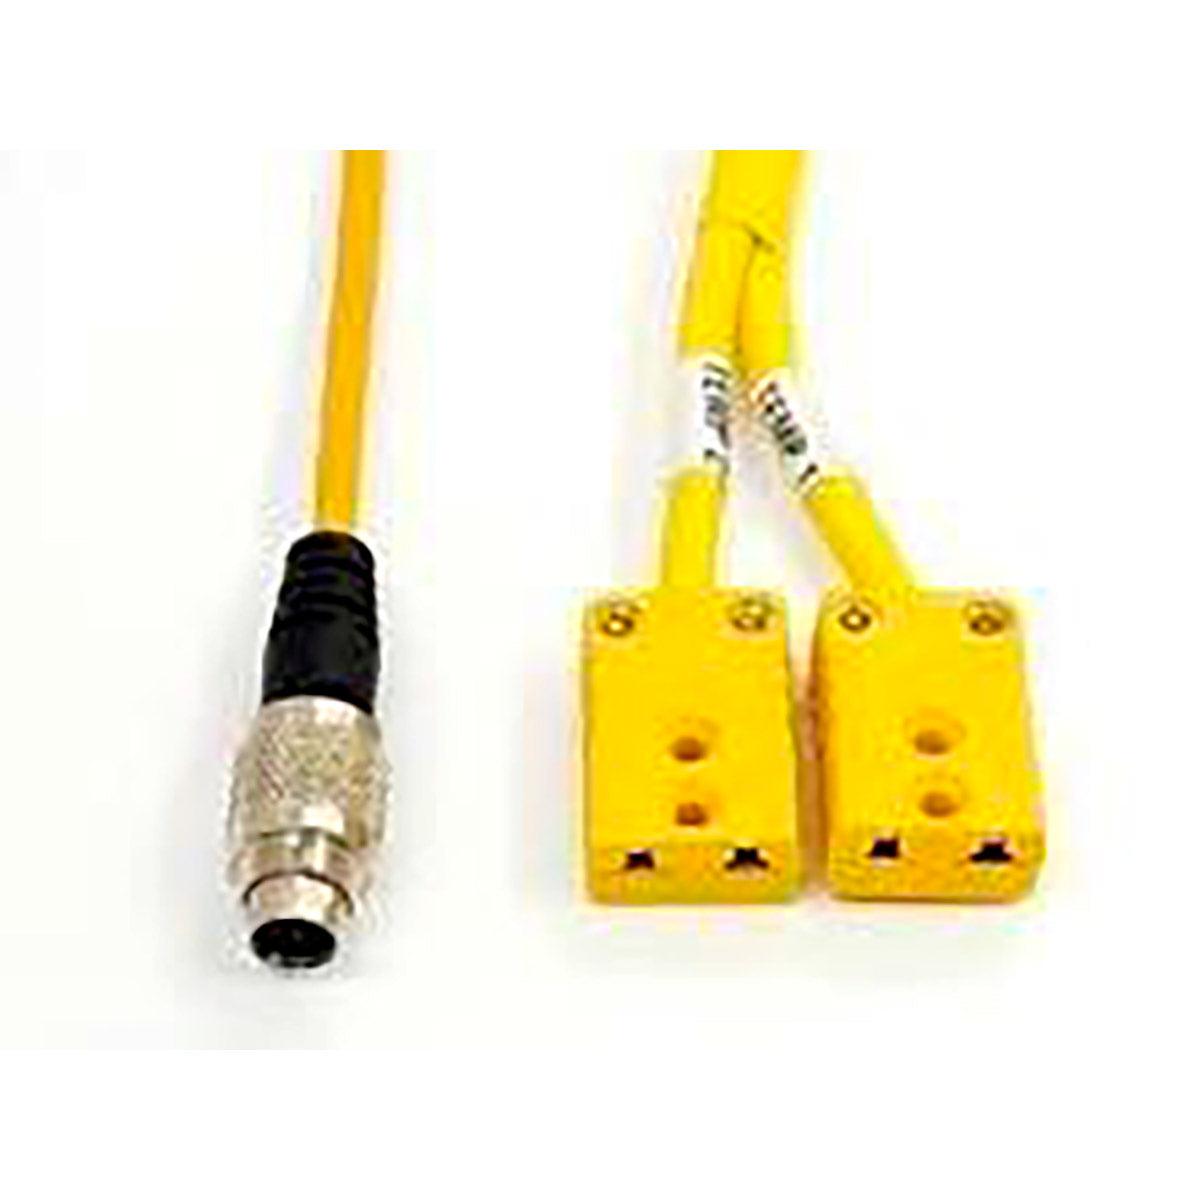 MyChron 2T Ext Cable 2TC - 2 x Yellow Square K Type Connectors